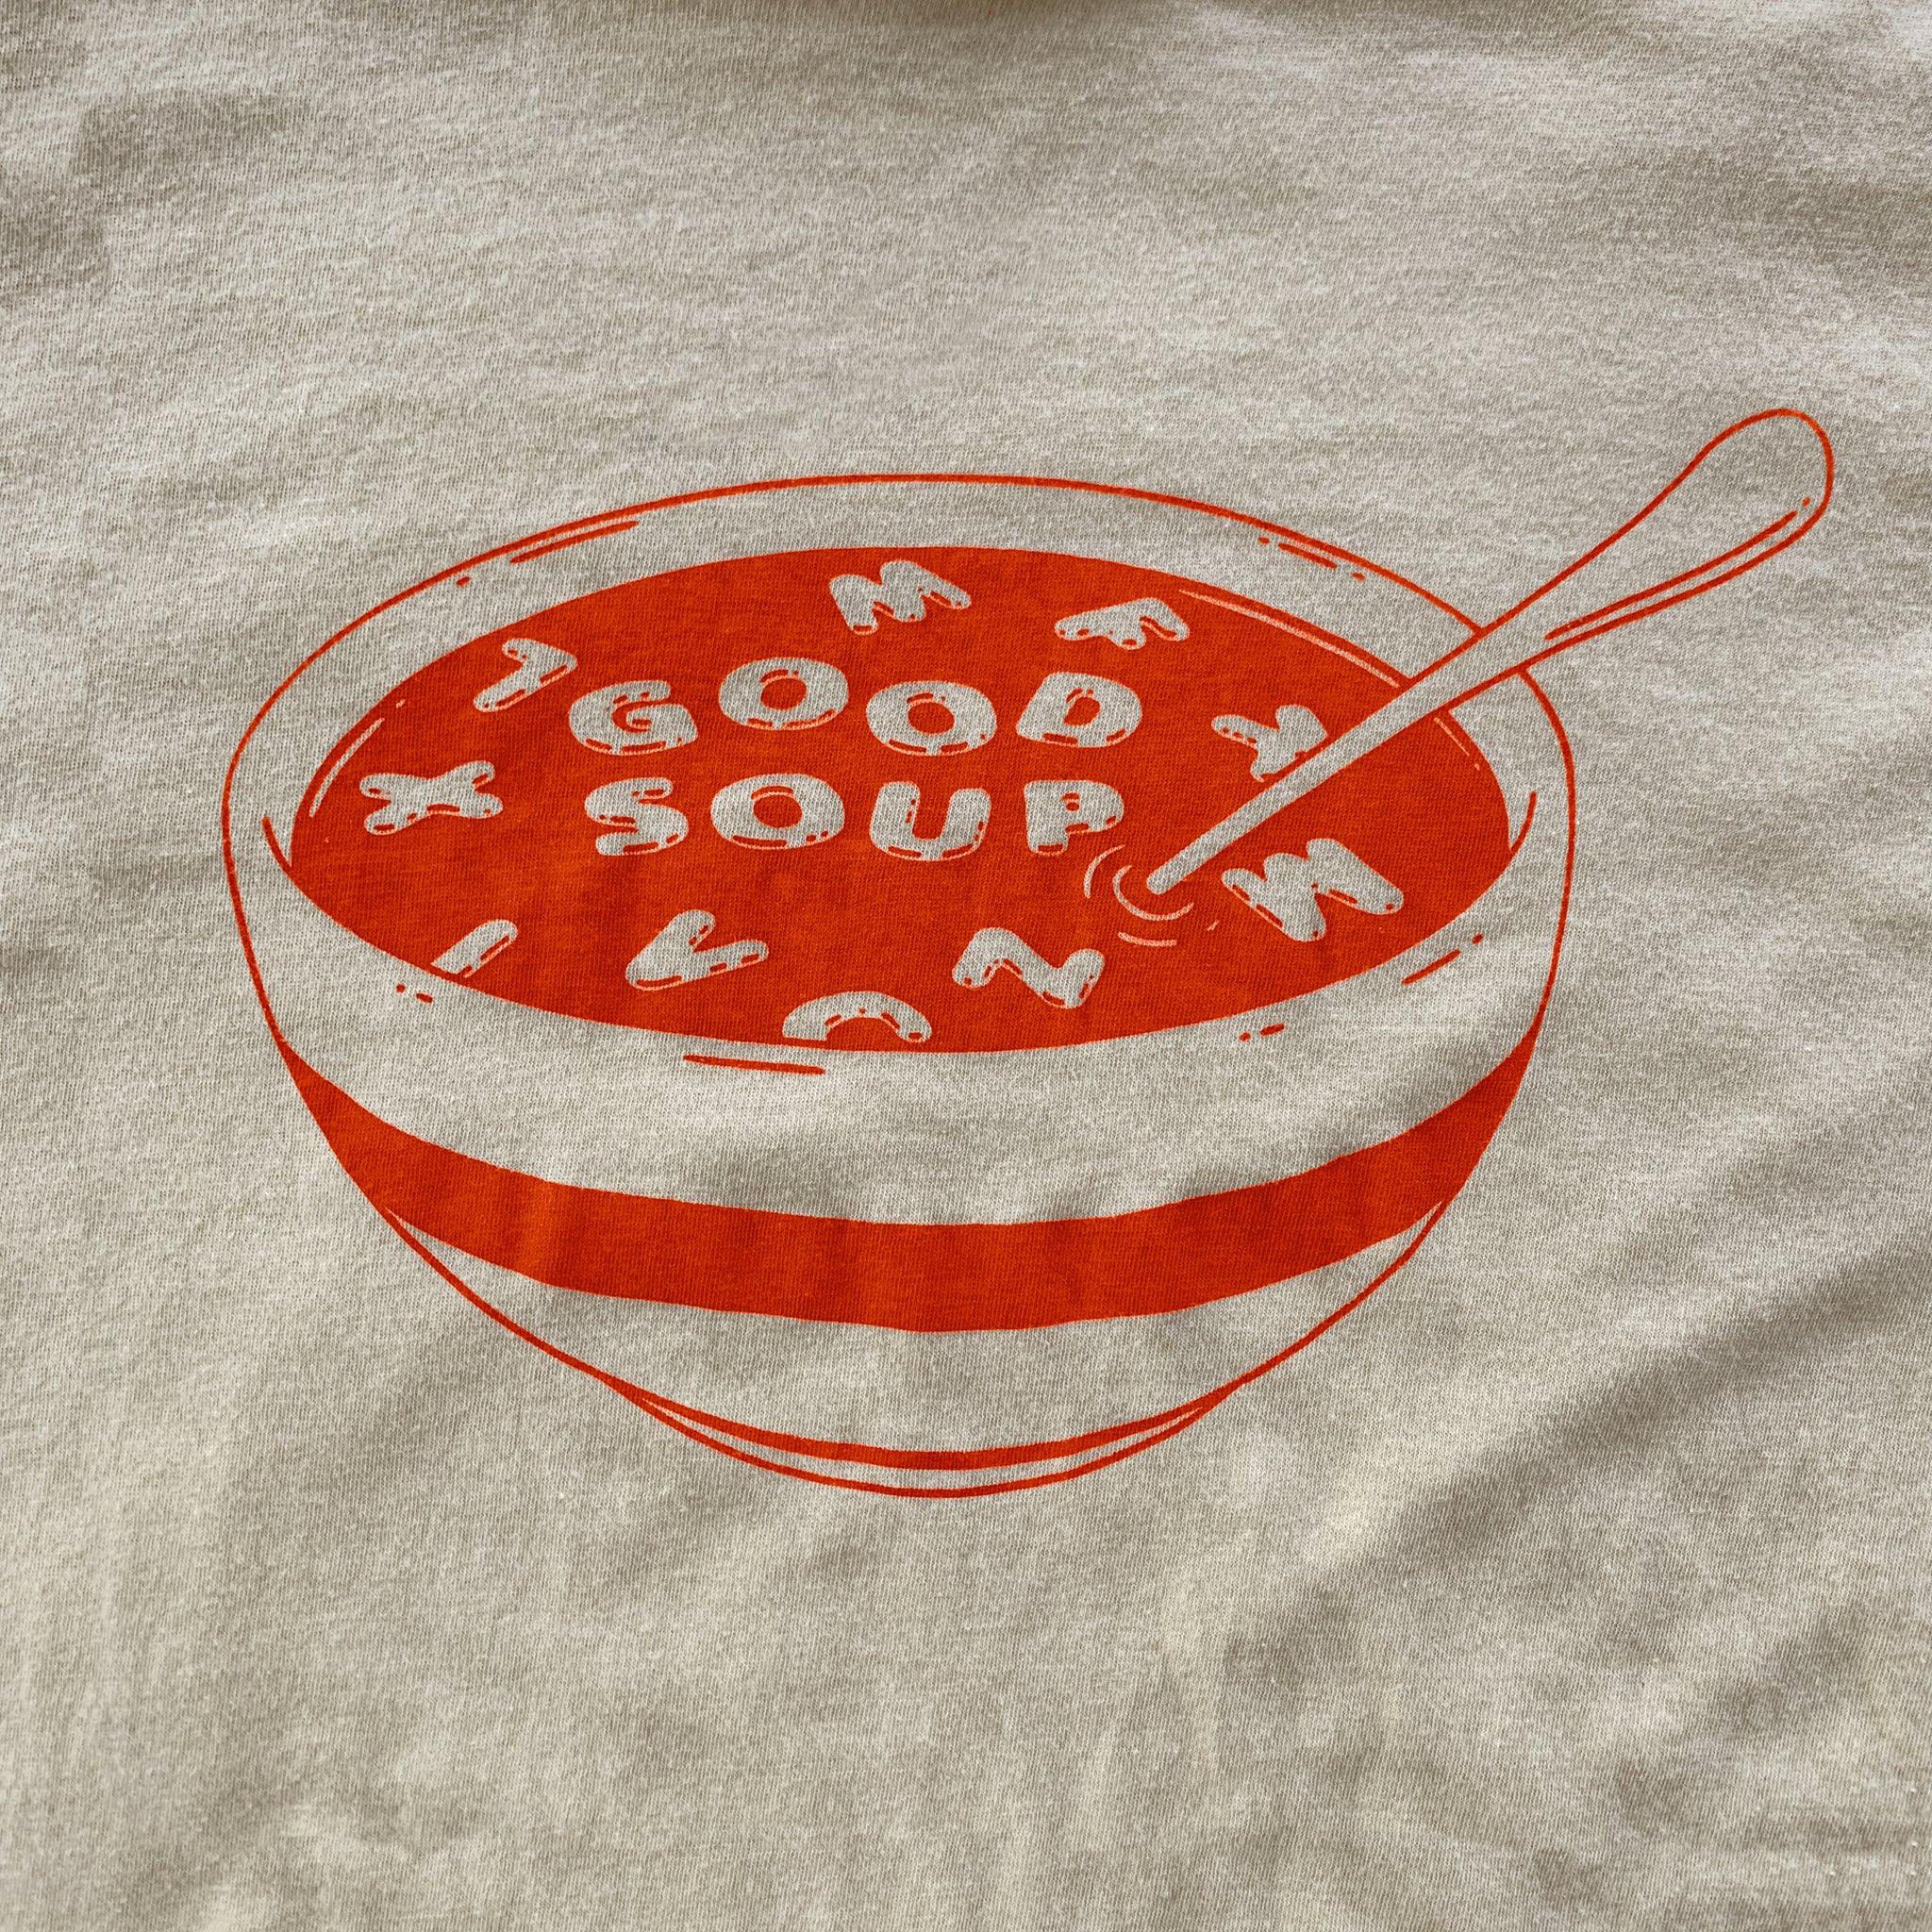 Good Soup - Shirt